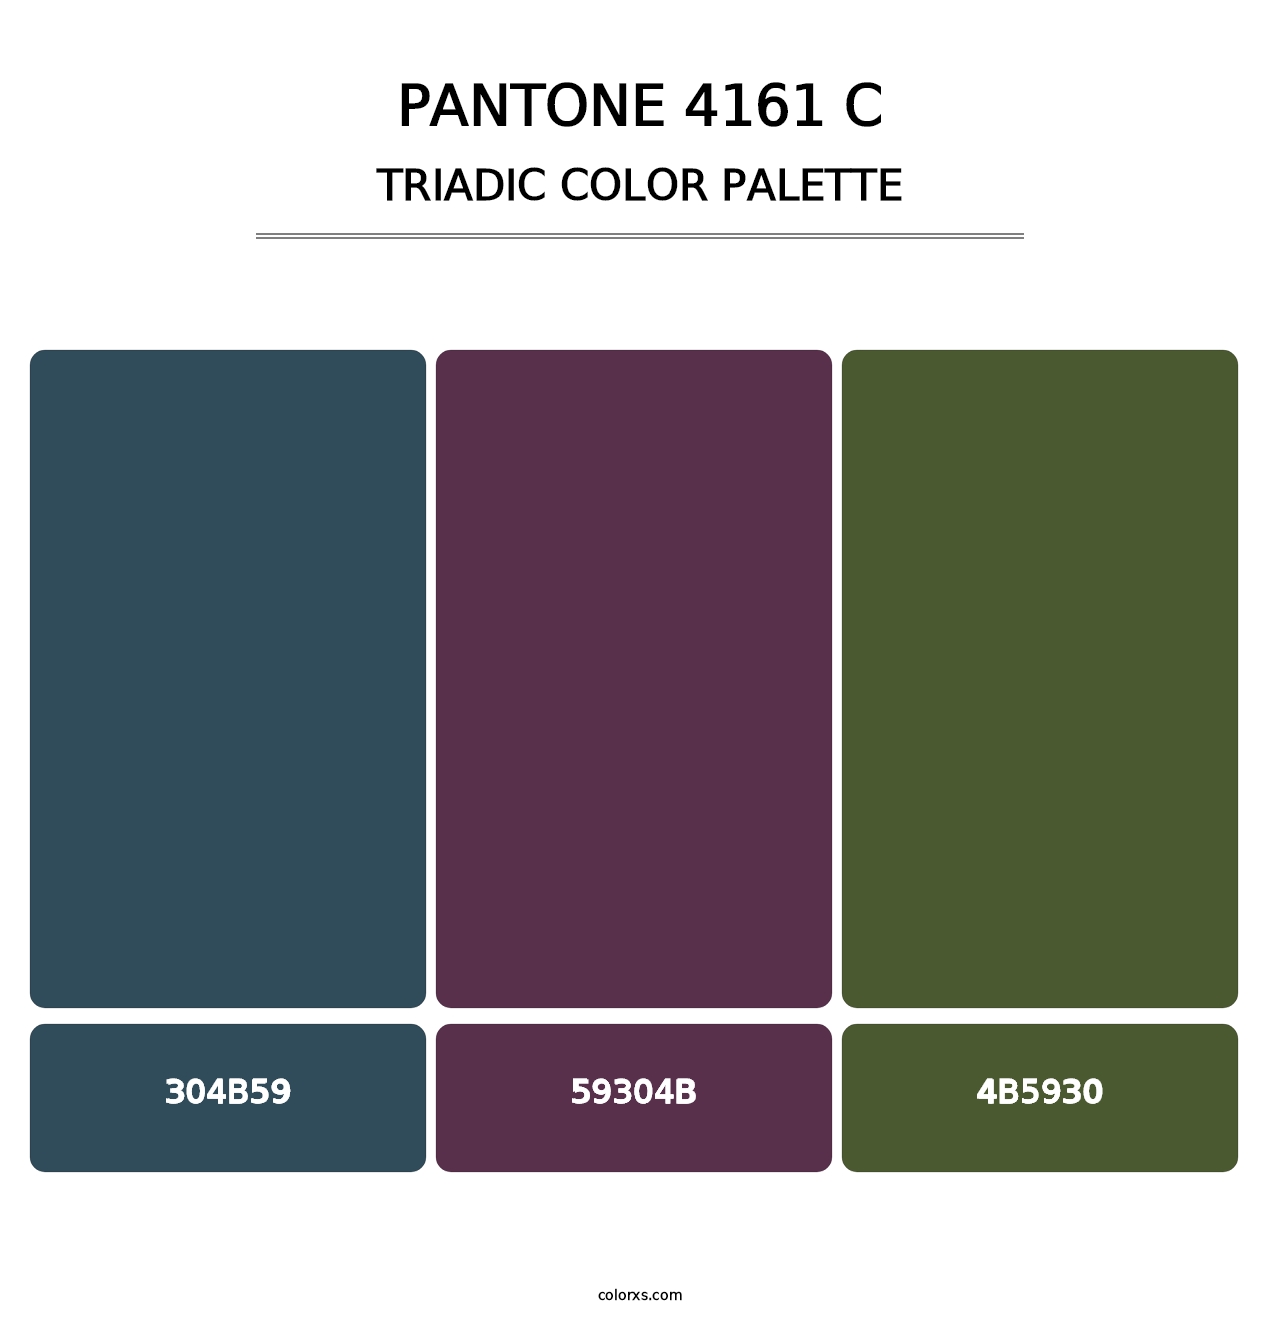 PANTONE 4161 C - Triadic Color Palette